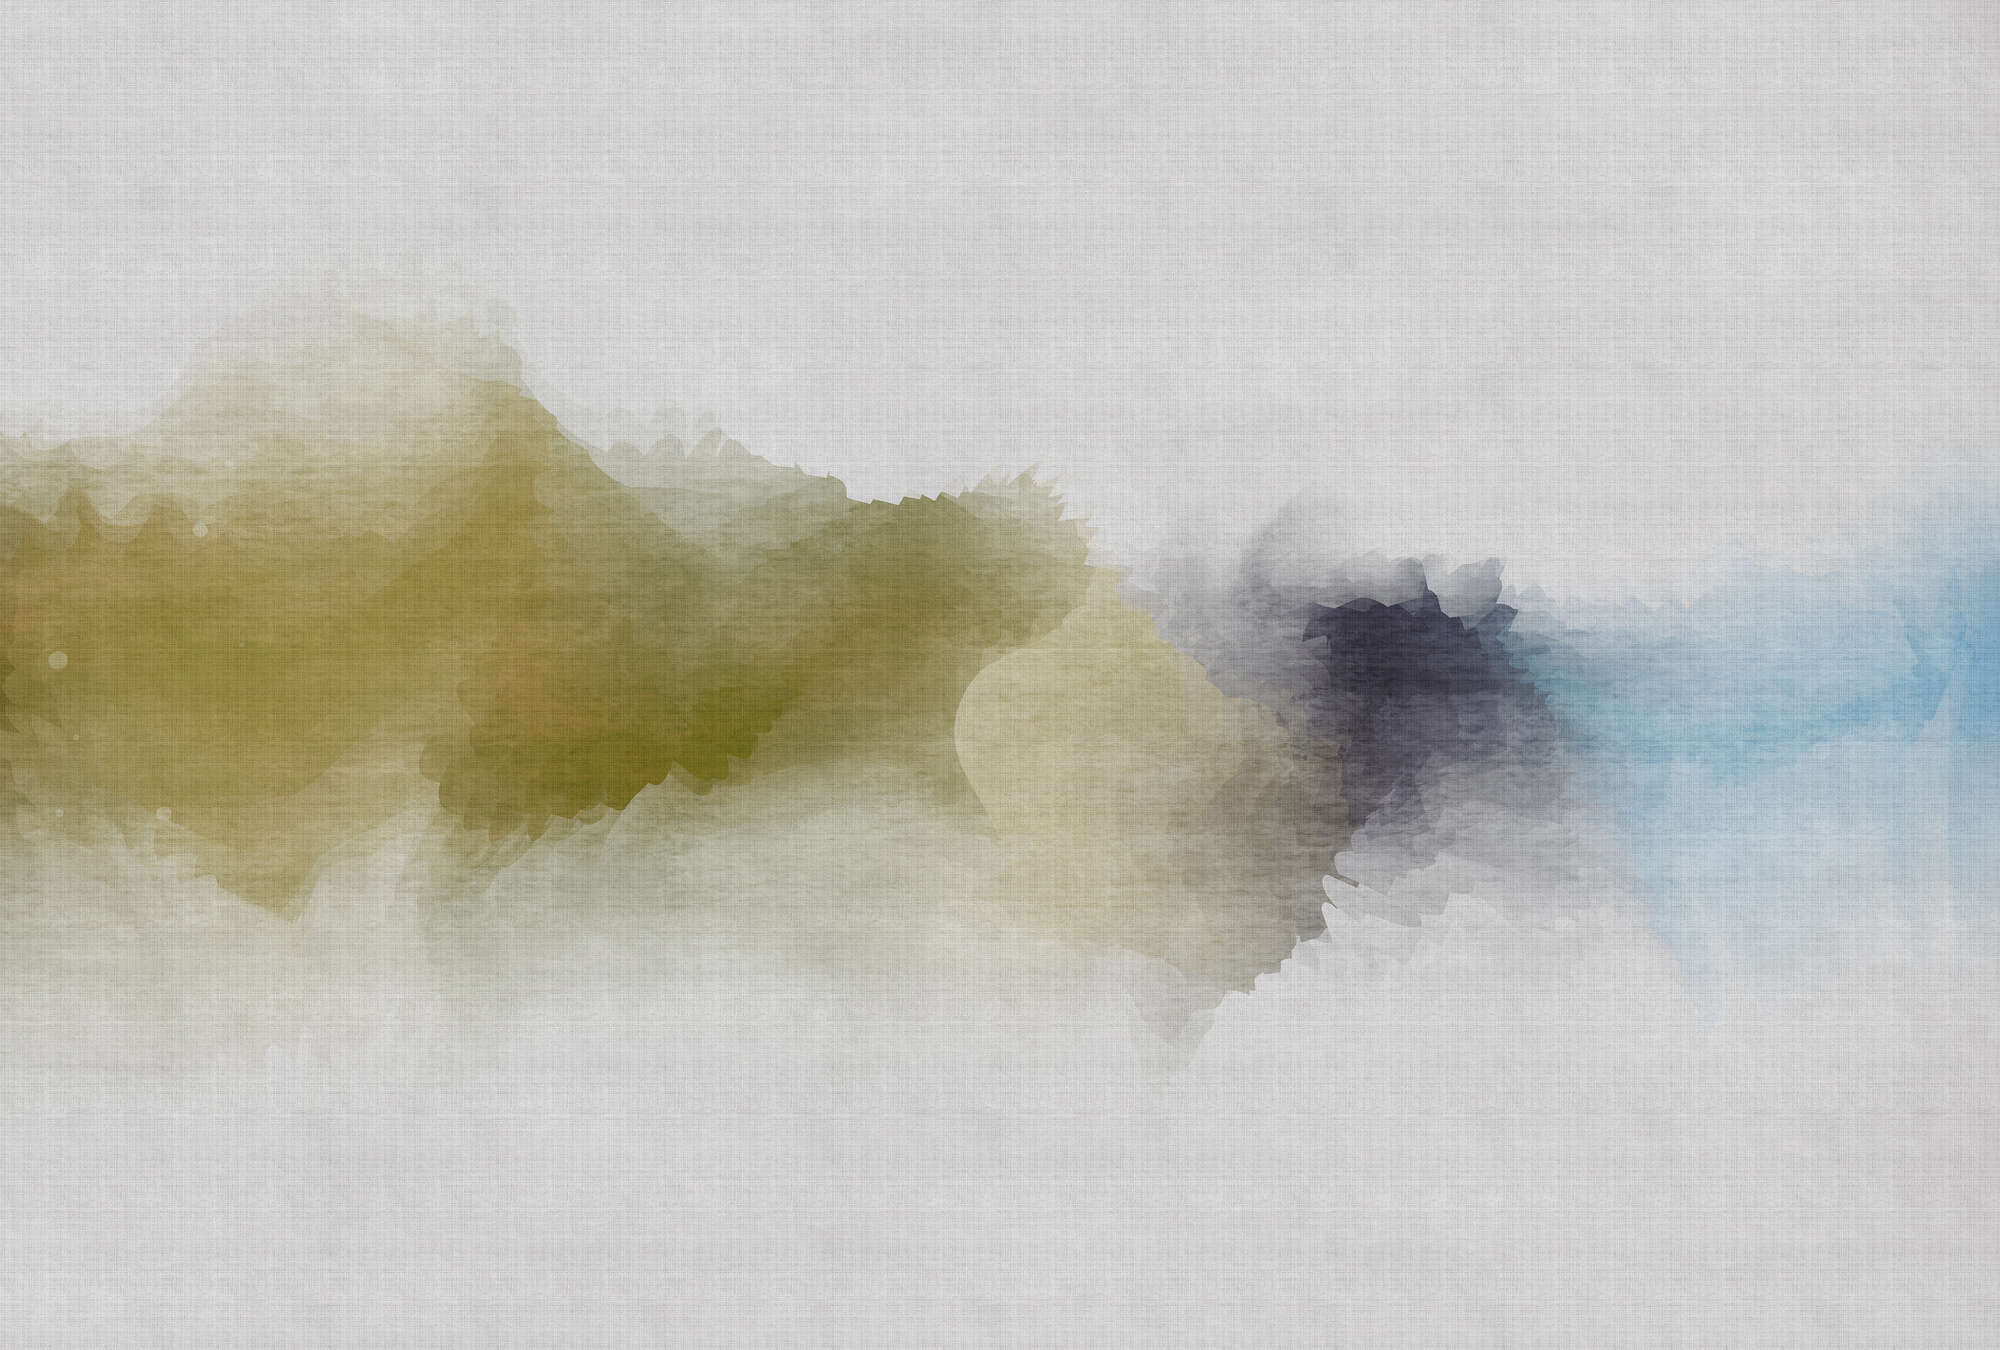             Daydream 3 - Fotomural nublado acuarela - estructura de lino natural - Azul, Amarillo | Perla liso vellón
        